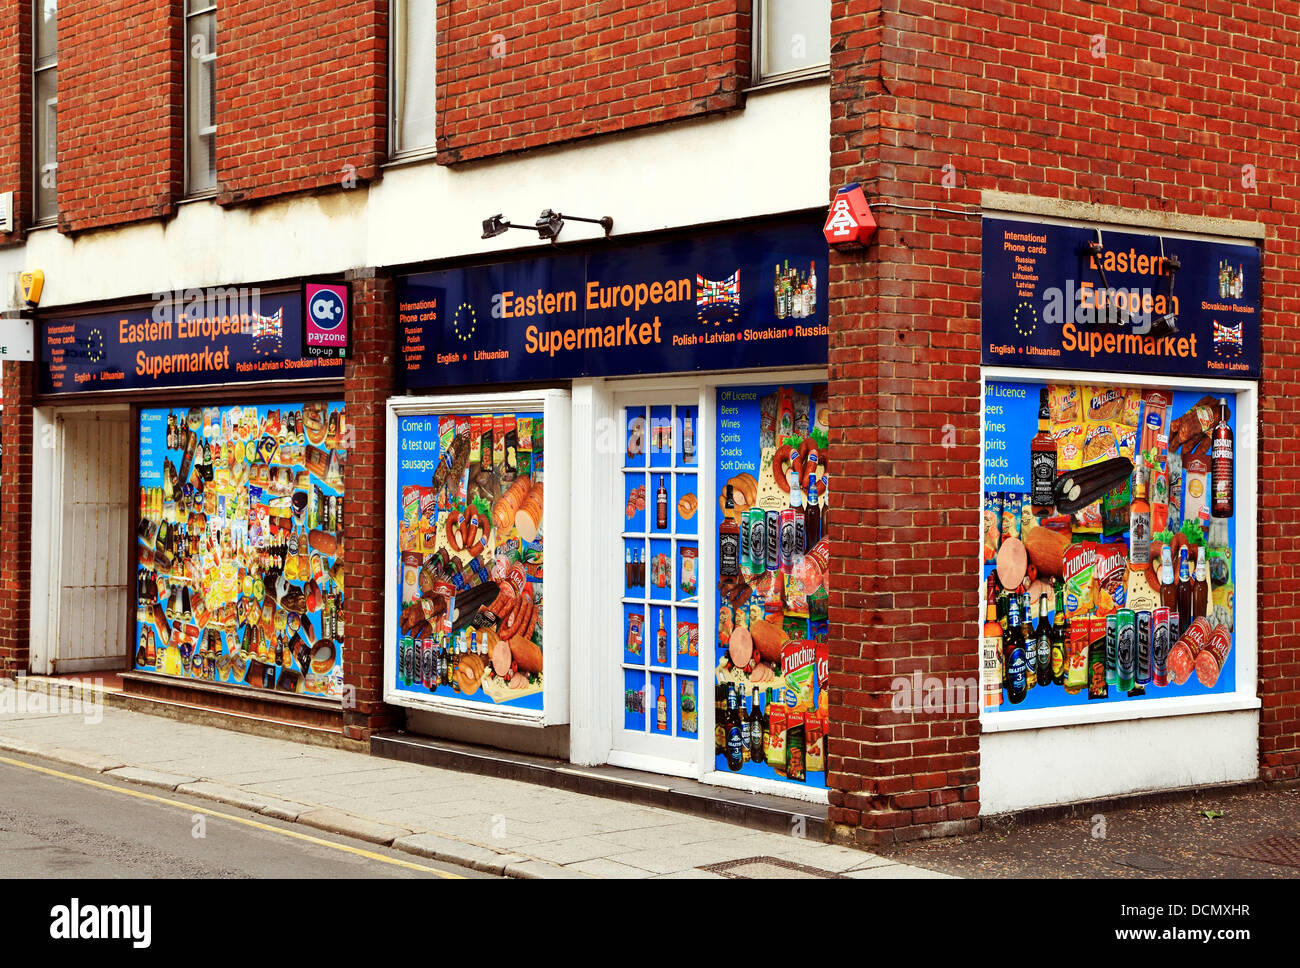 Östlichen europäischen Supermarkt, Kings Lynn, Norfolk, UK, Geschäfte für Ost Ost Europa eingewanderten Bevölkerung Einwanderer shop Stockfoto